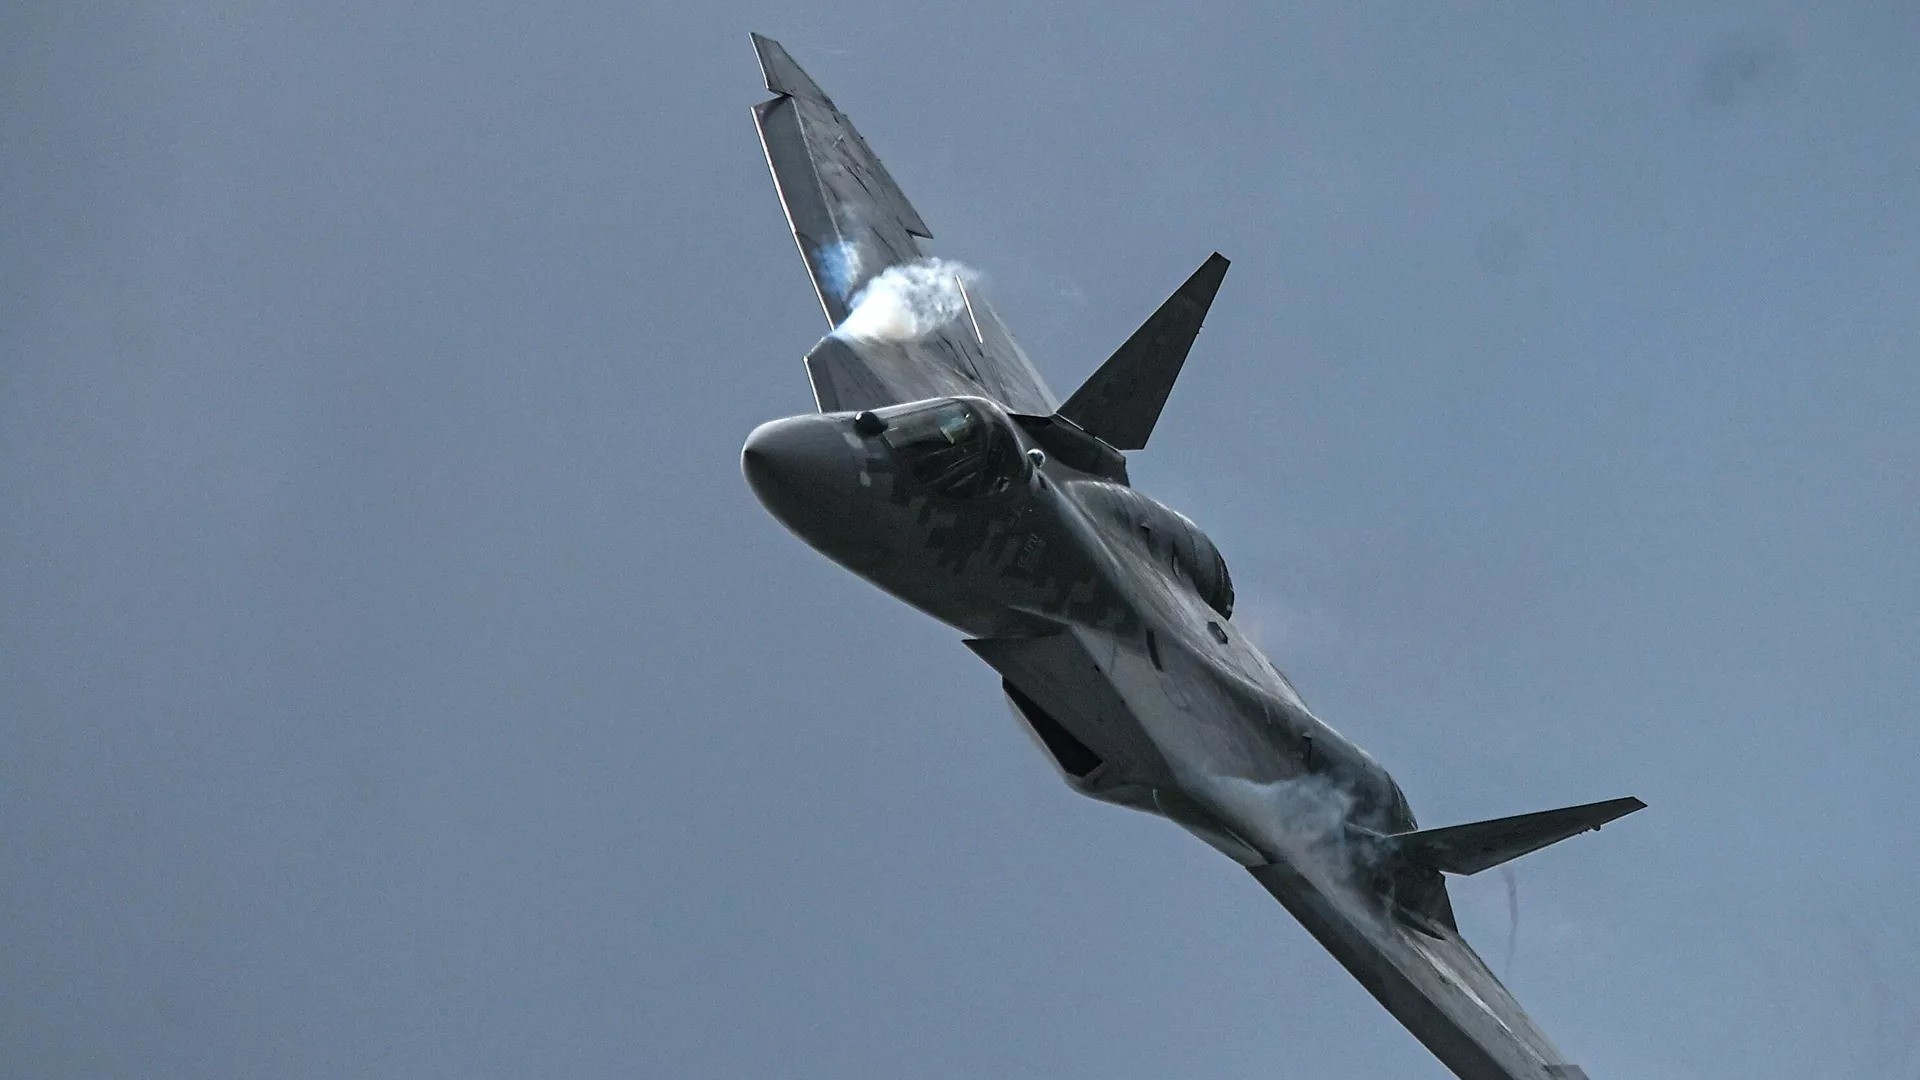 Hé lộ hình ảnh về phương án thiết kế máy bay Su-57 phiên bản hai chỗ ngồi